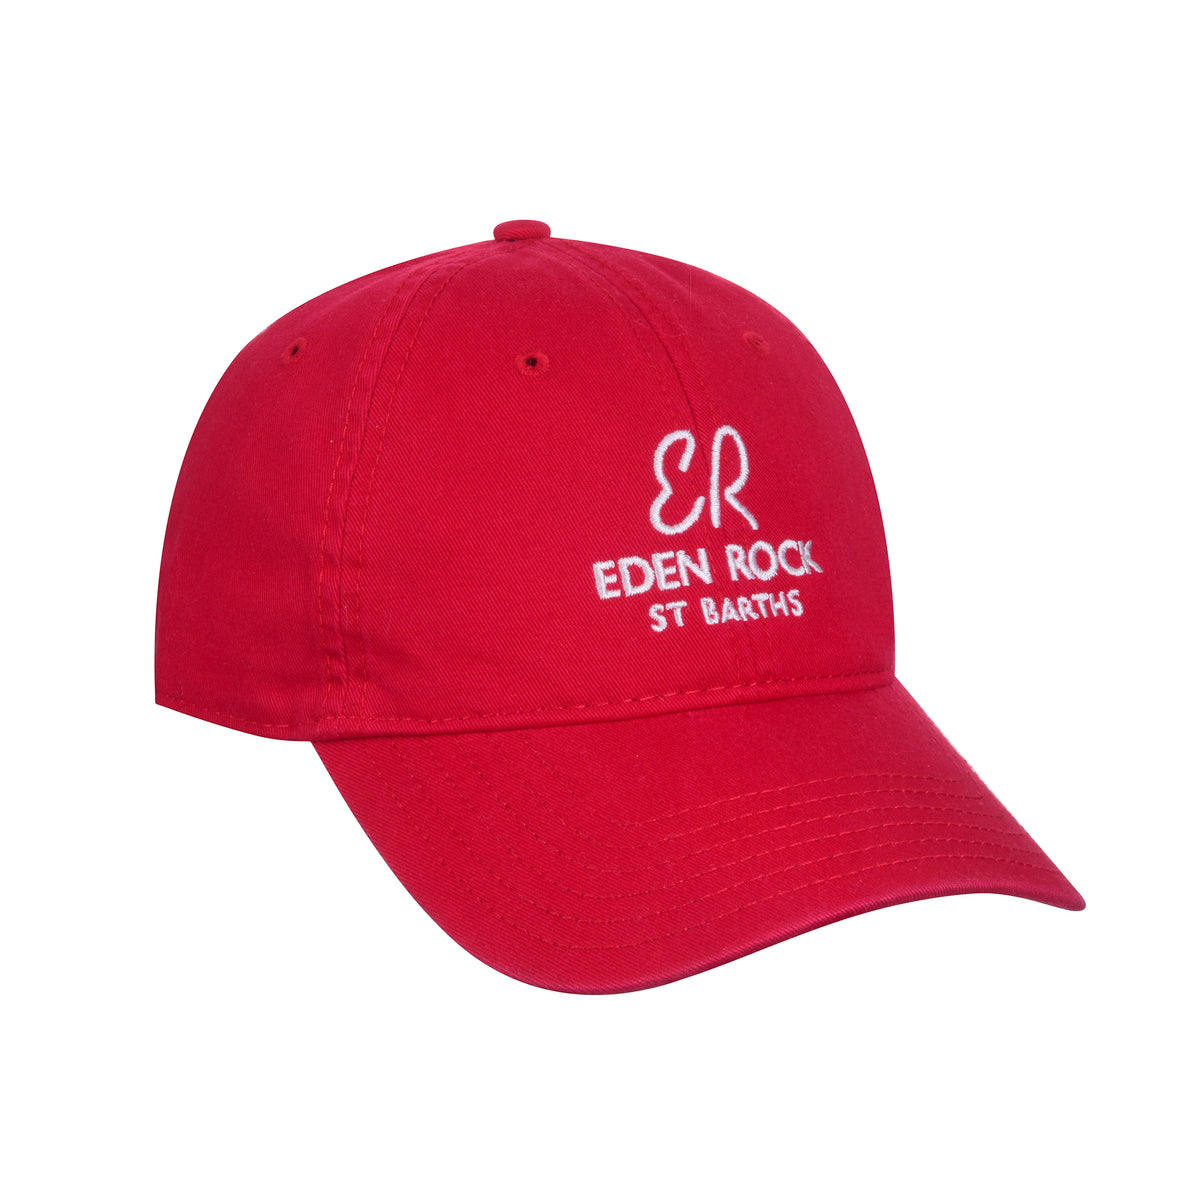 Eden Rock - St Barths Baseball Cap